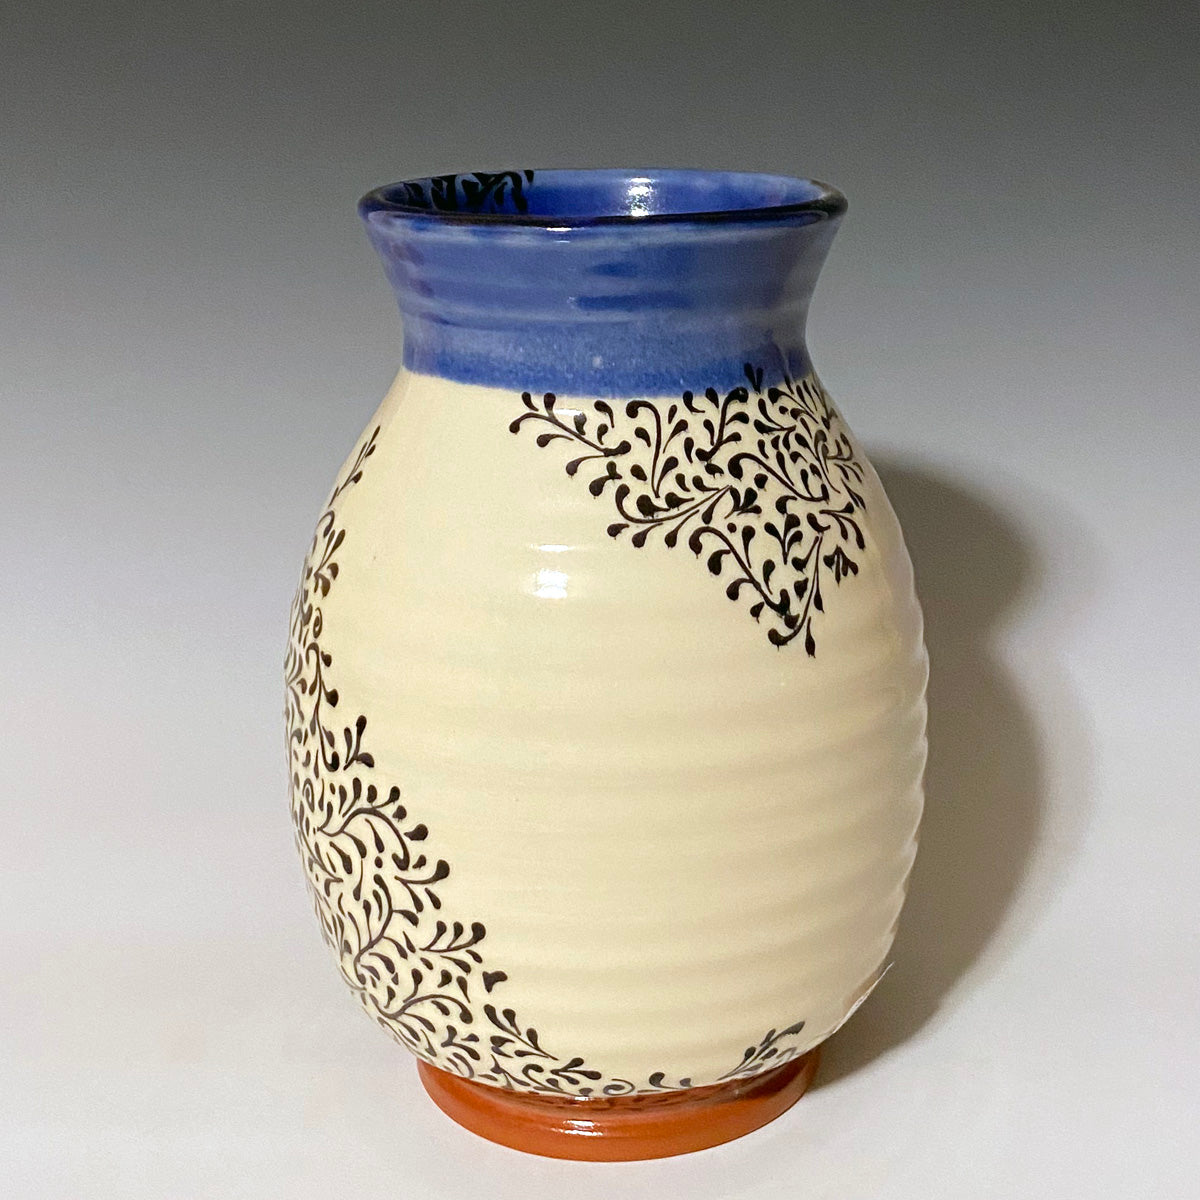 Black and Blue large vase